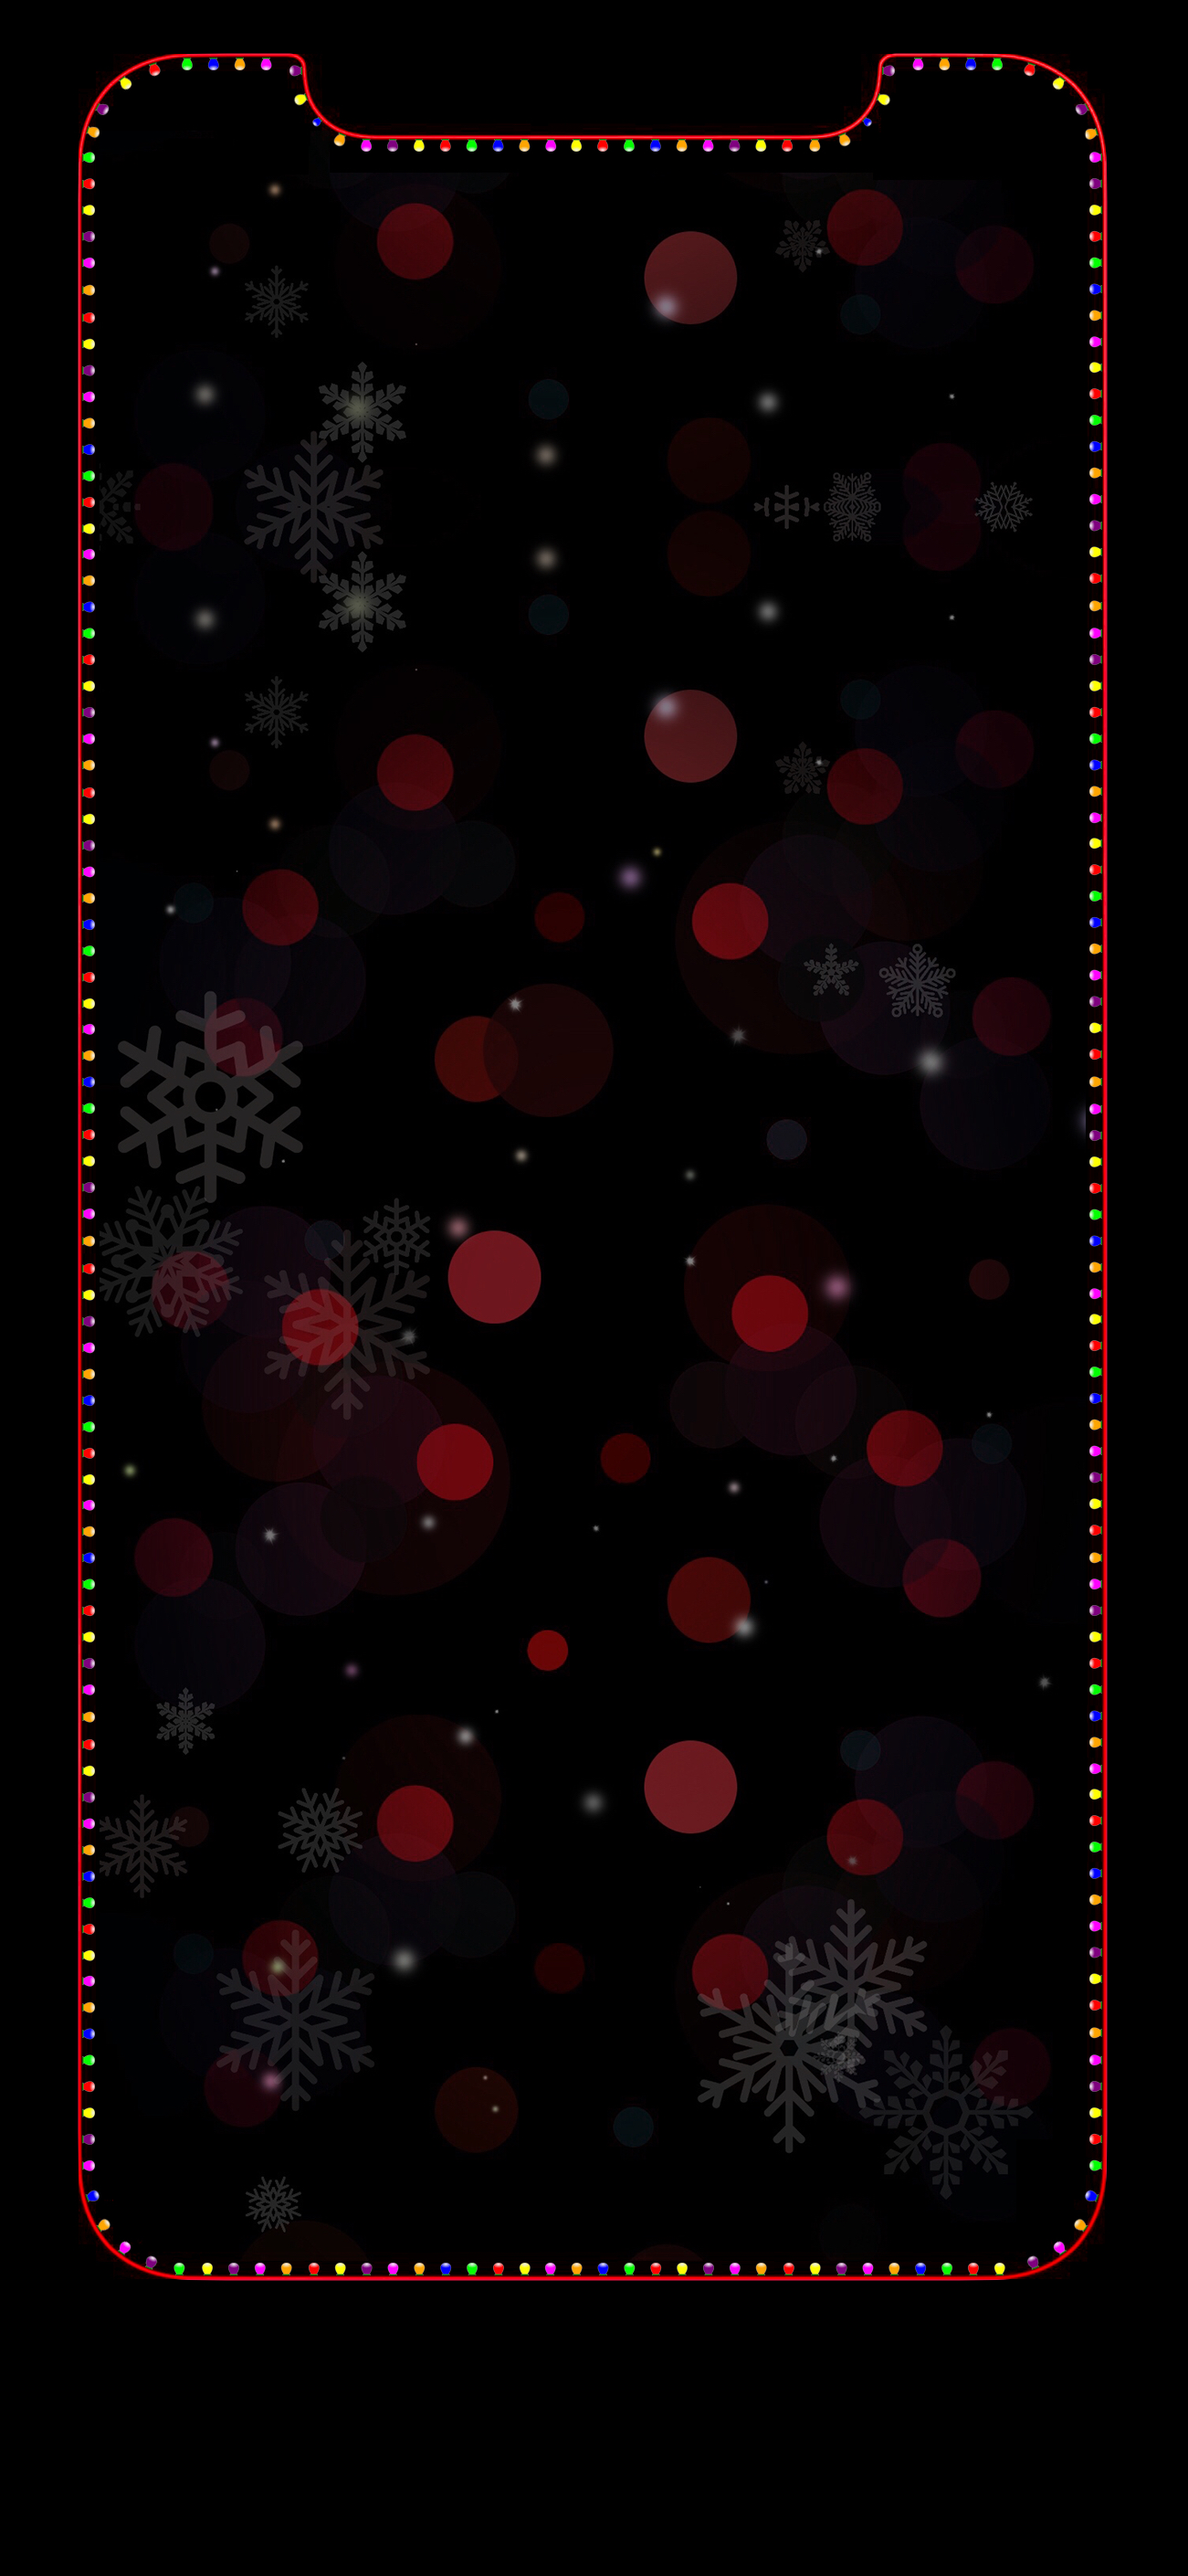 รวมภาพพื้นหลัง iPhone (Wallpaper) สำหรับเทศกาลคริสต์มาส - iPhoneMod